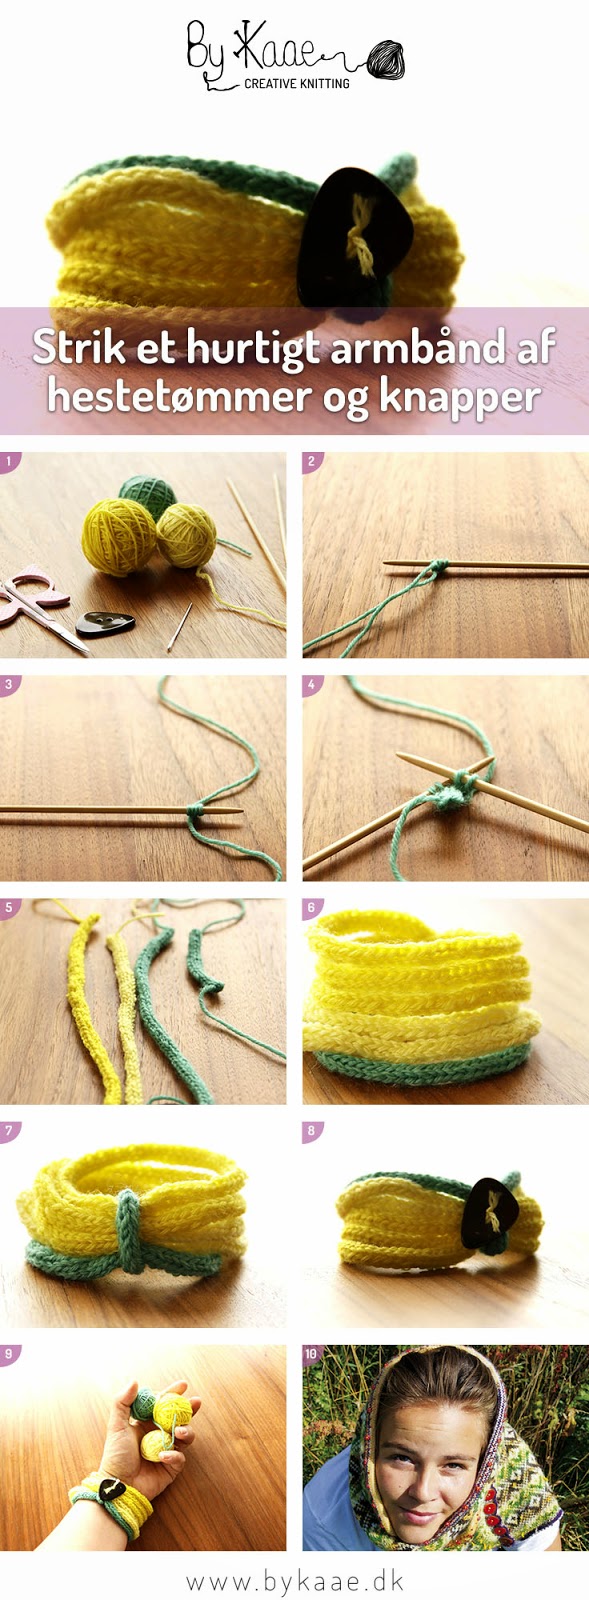 Knitting By Kaae: DIY Strik et hurtigt armbånd af og knapper